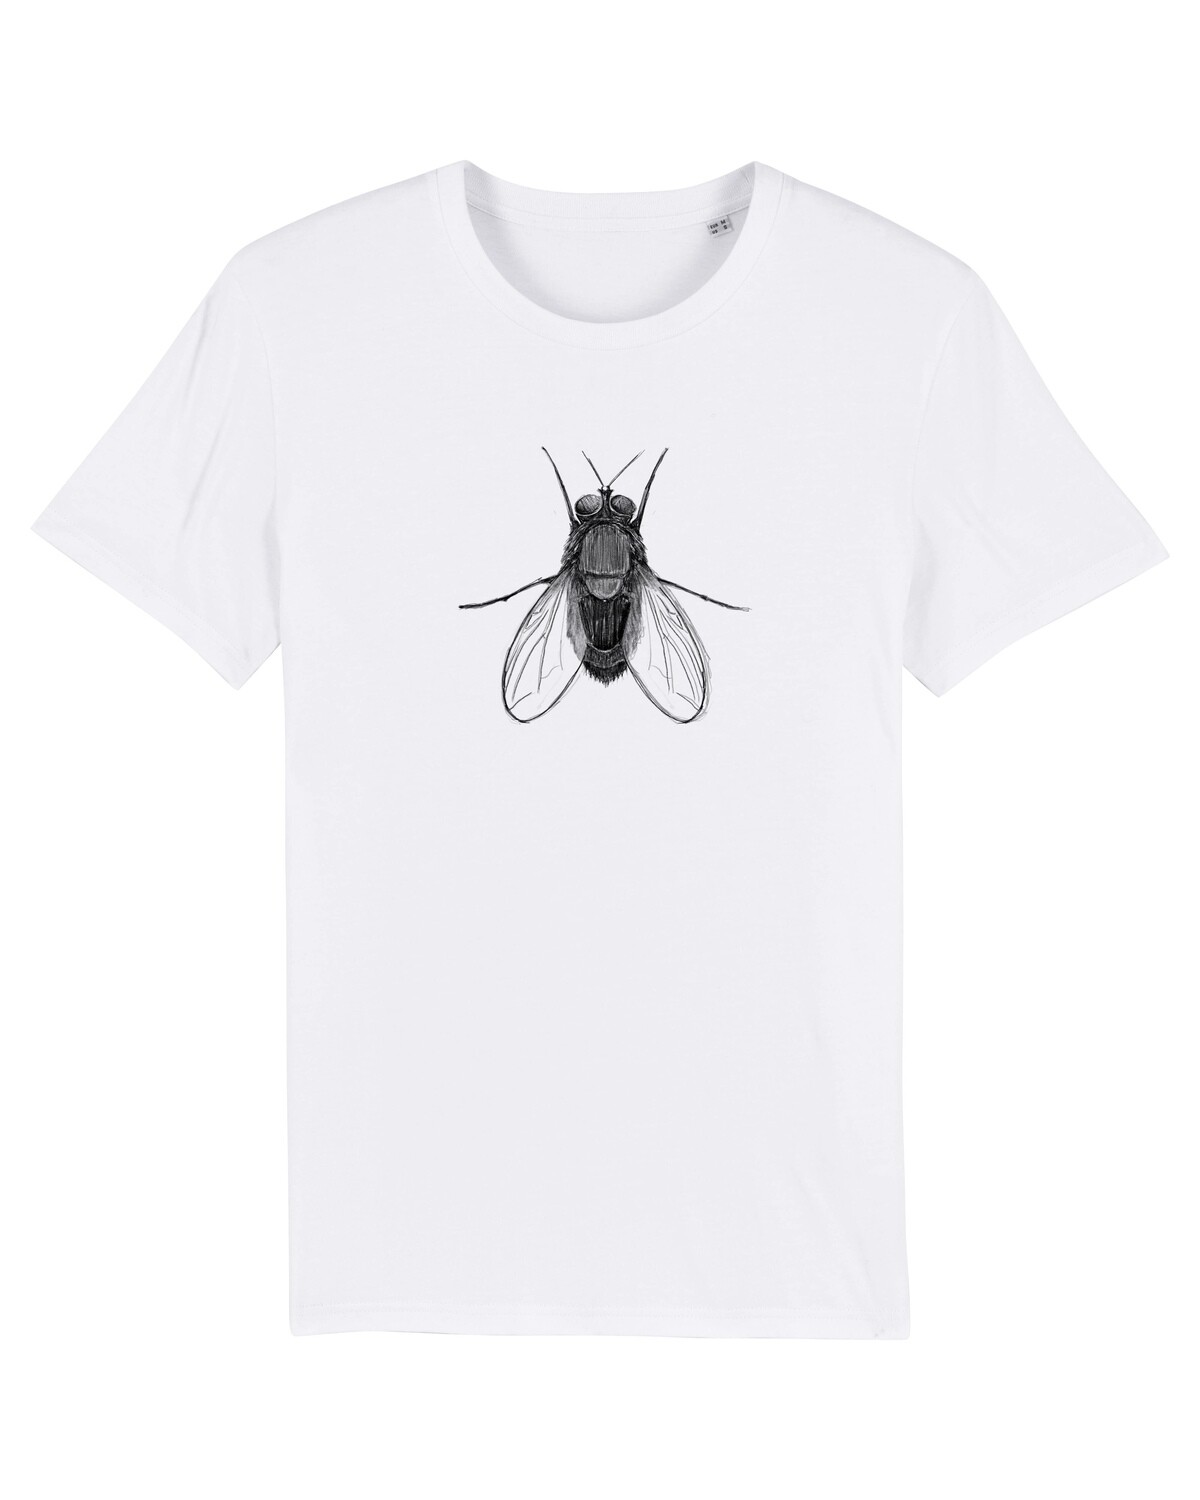 Basic Unisex “Fly” T-shirt